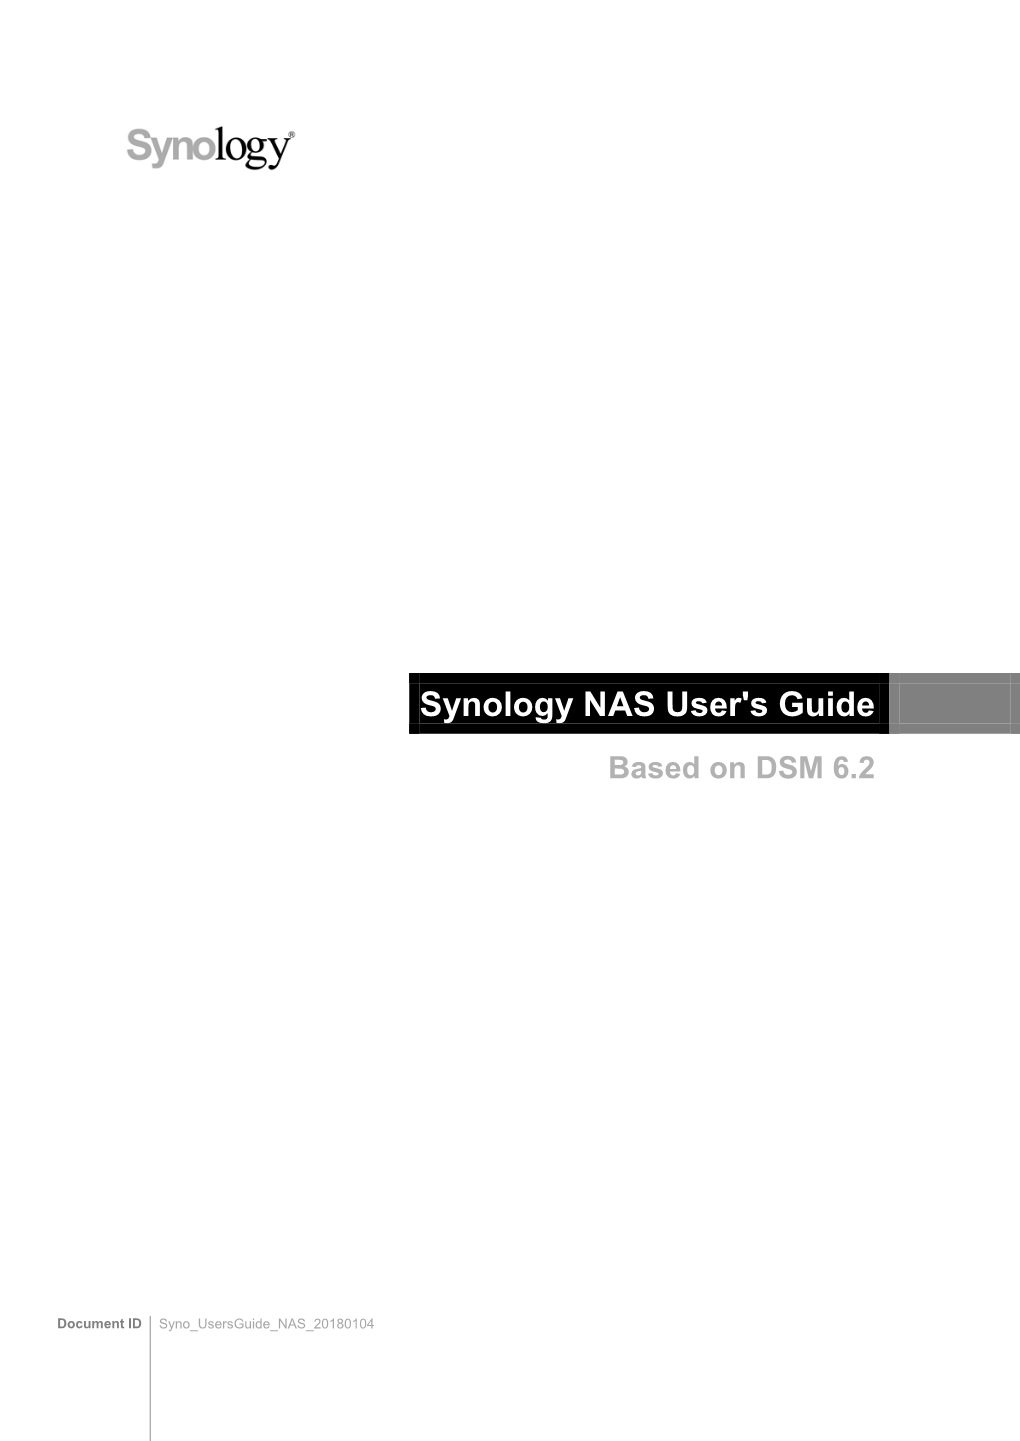 Synology Diskstation User's Guide Based on DSM